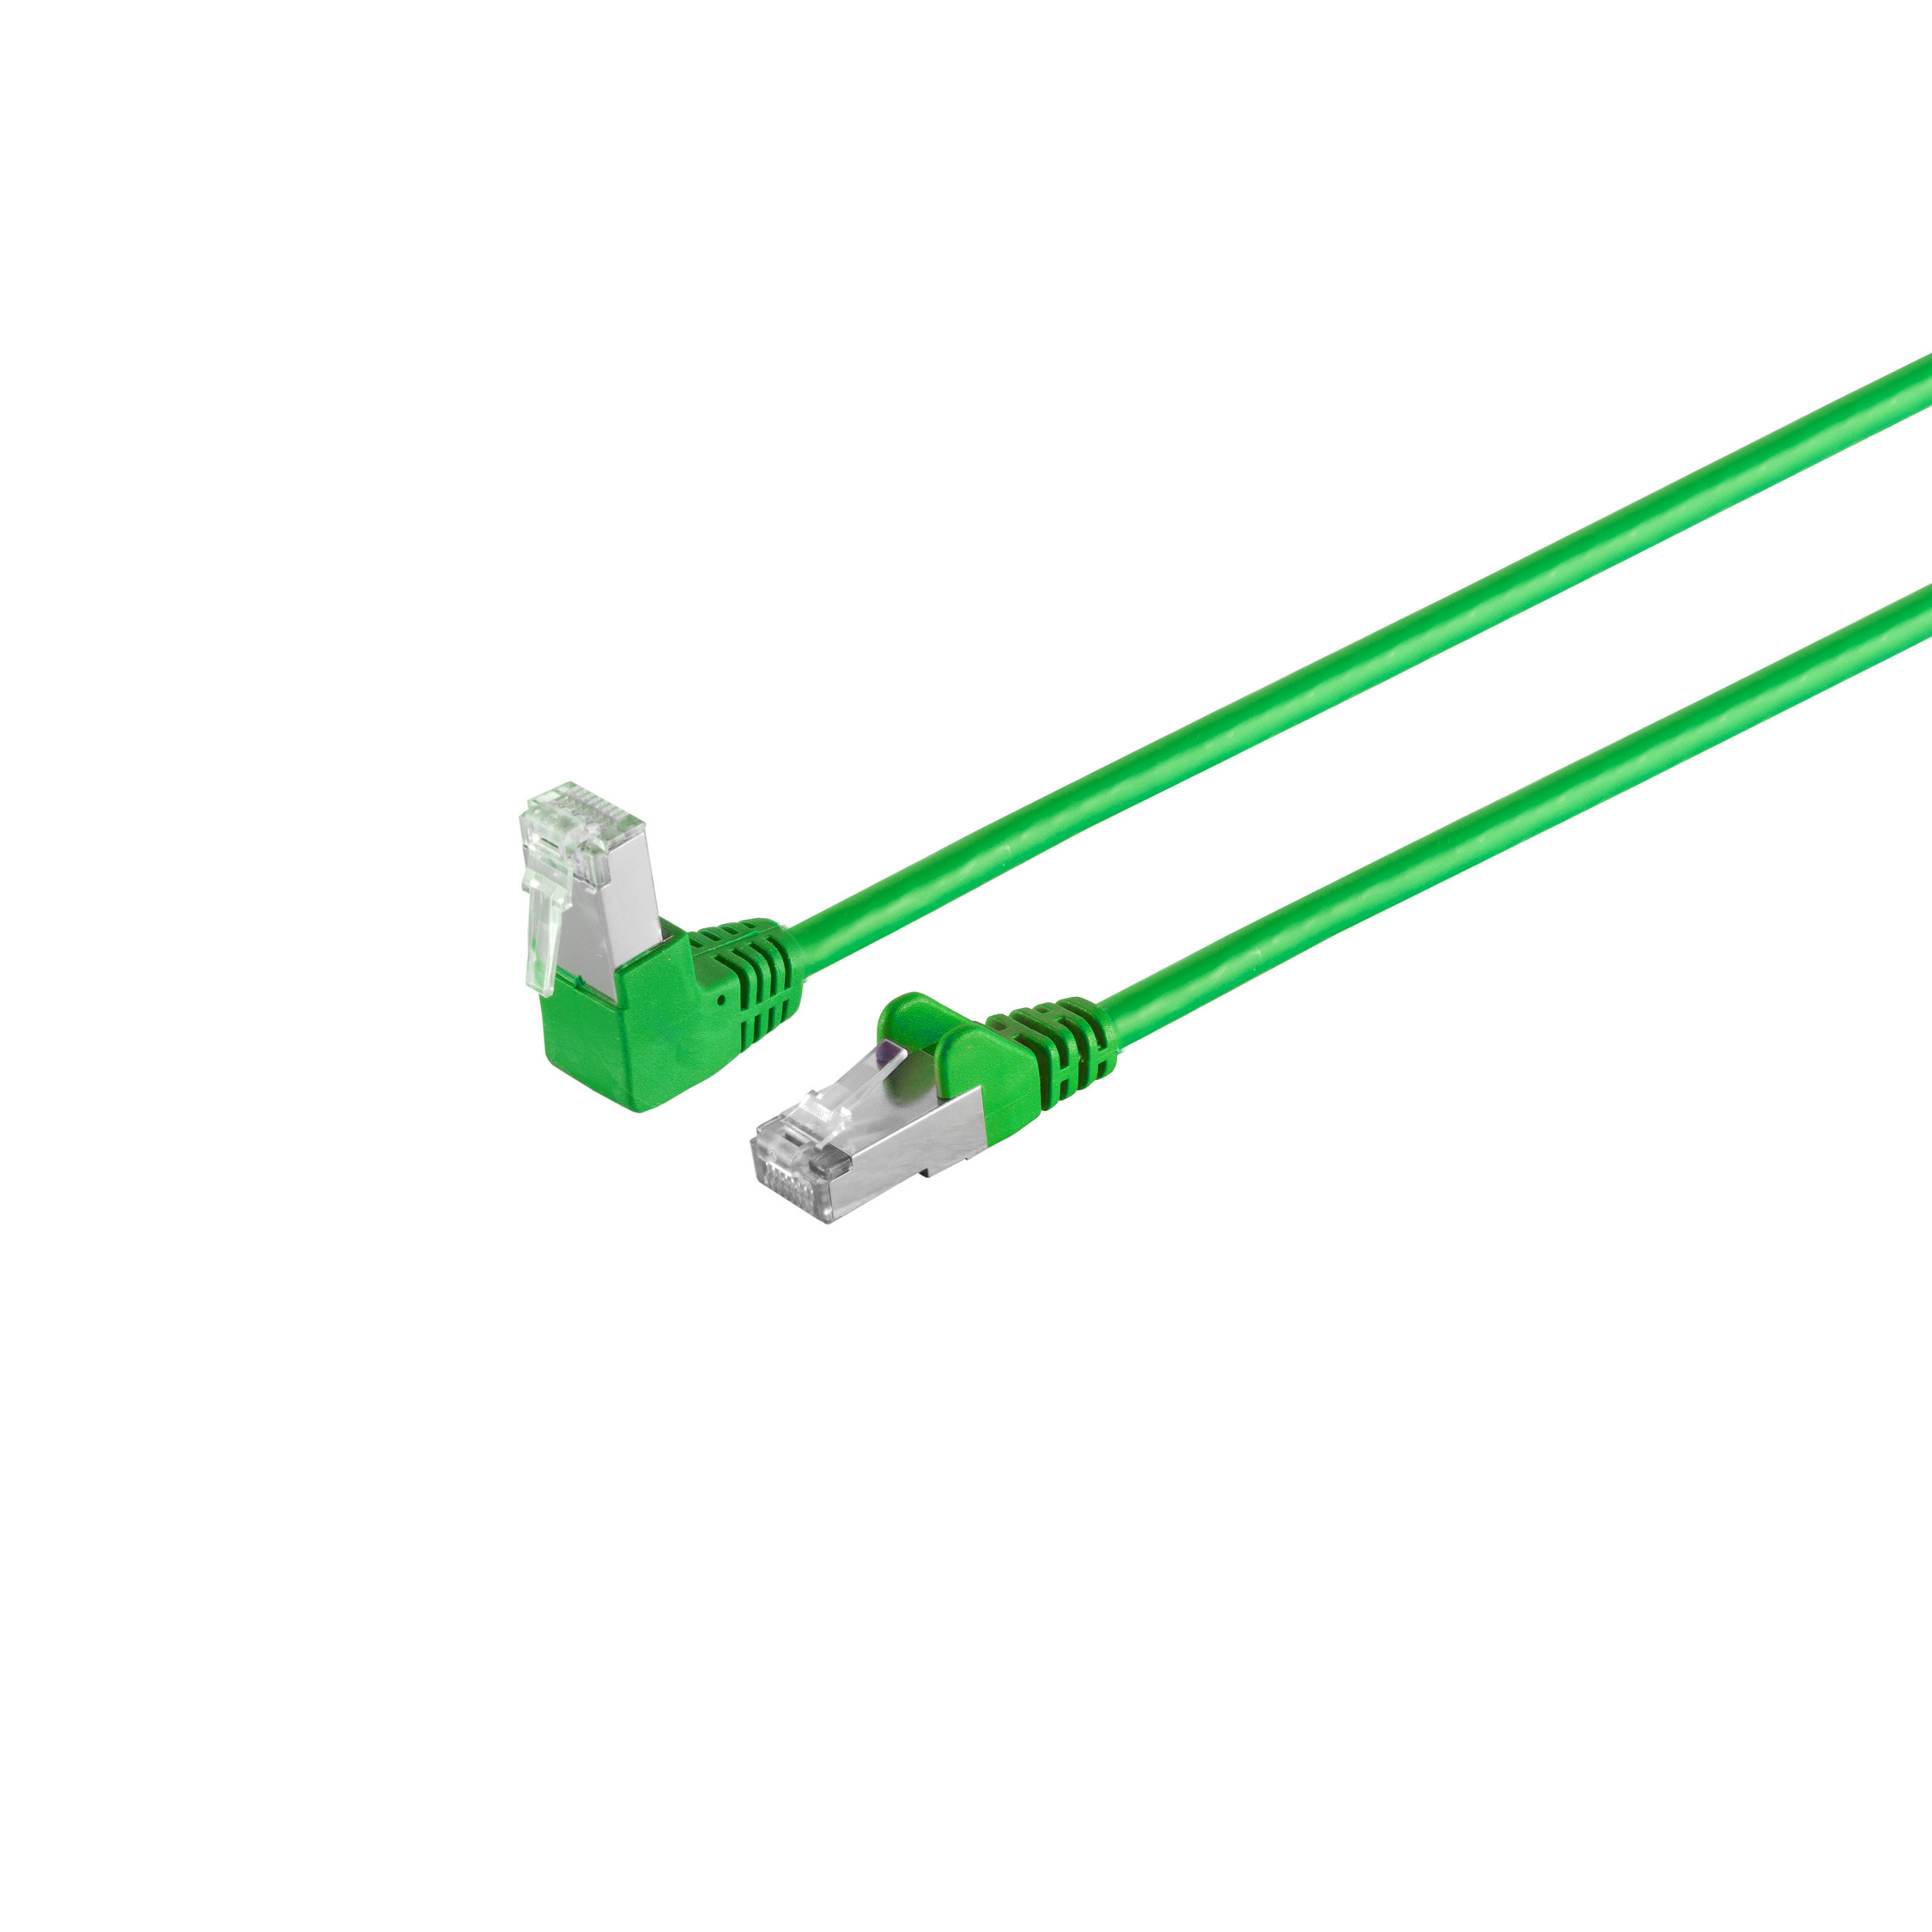 cat 6 Winkel-gerade Patchkabel grün S/FTP Patchkabel RJ45, 10 m S/CONN CONNECTIVITY PIMF 10m, MAXIMUM